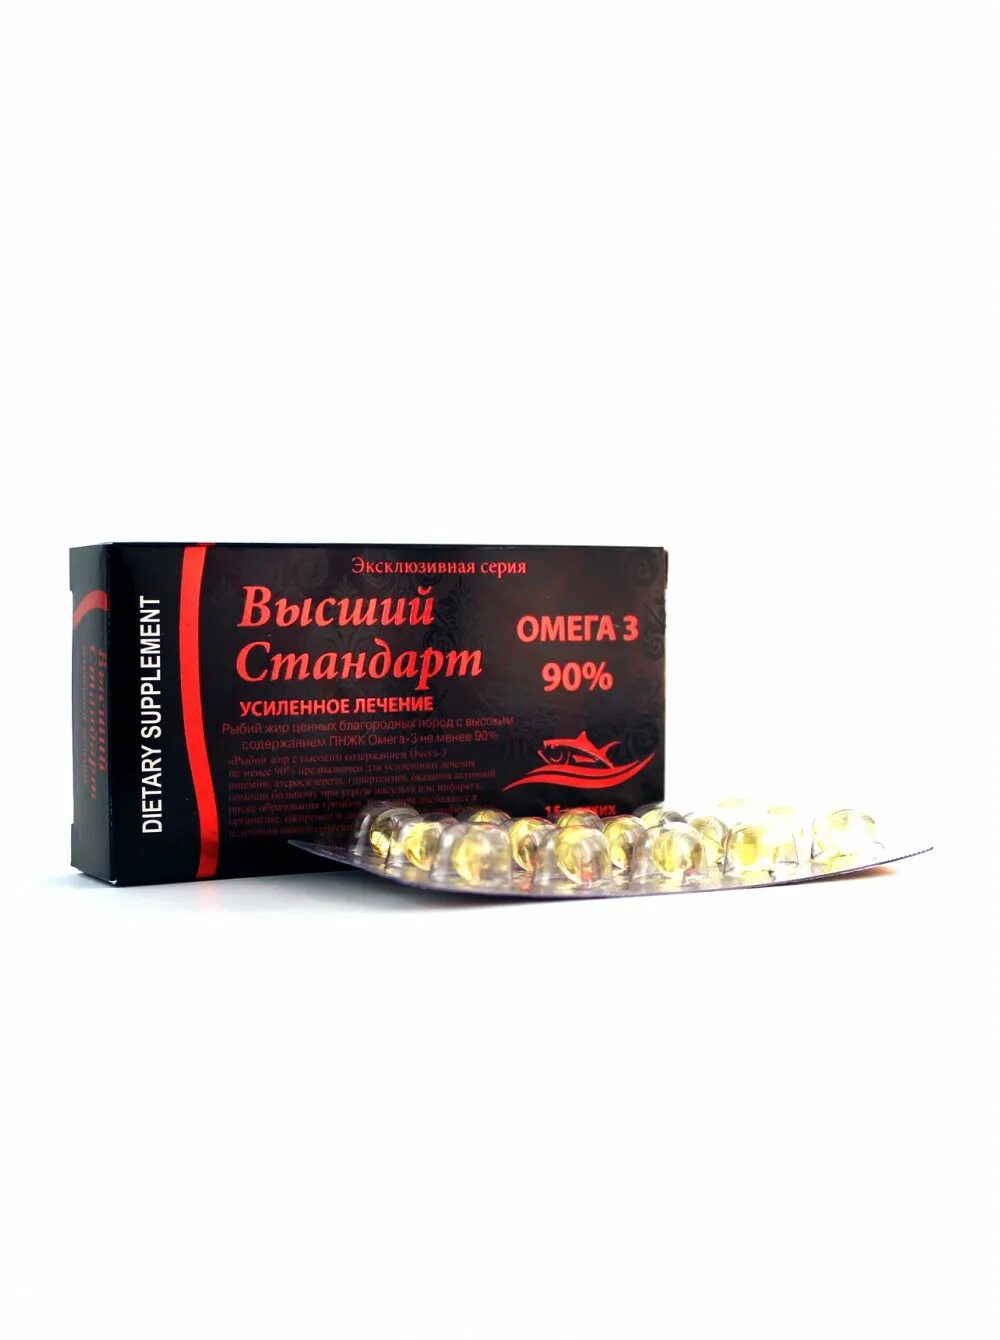 Усиленное лечение. Капсулы Arabian Secrets - высший стандарт Омега 3 (90%), 15 шт 500 мг. Эксклюзив препарат. Сенна Мекканская Арабиан Сикрет. Омега стандарт.